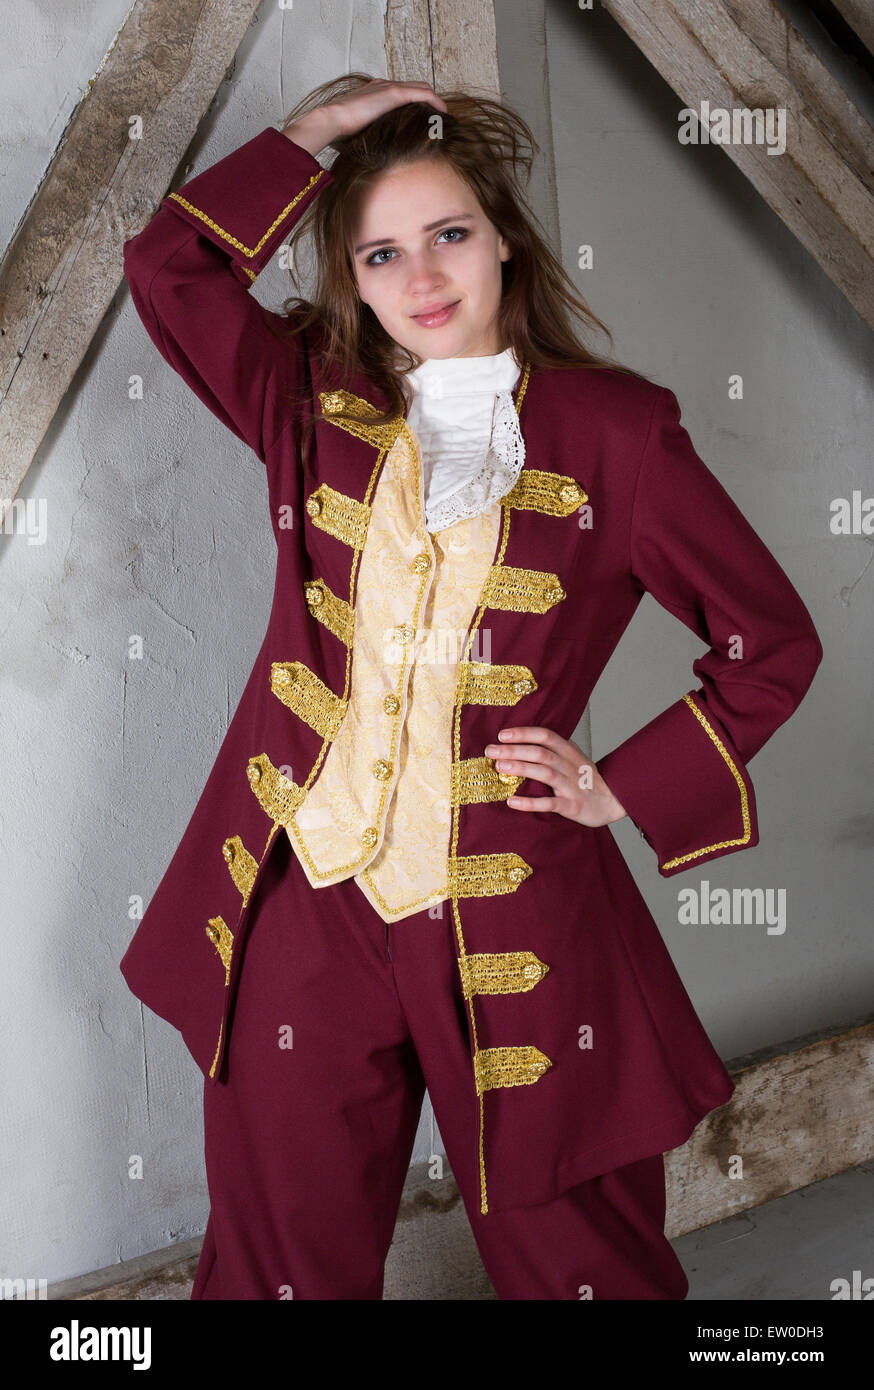 Mujer joven con traje vestido como un príncipe Fotografía de stock - Alamy